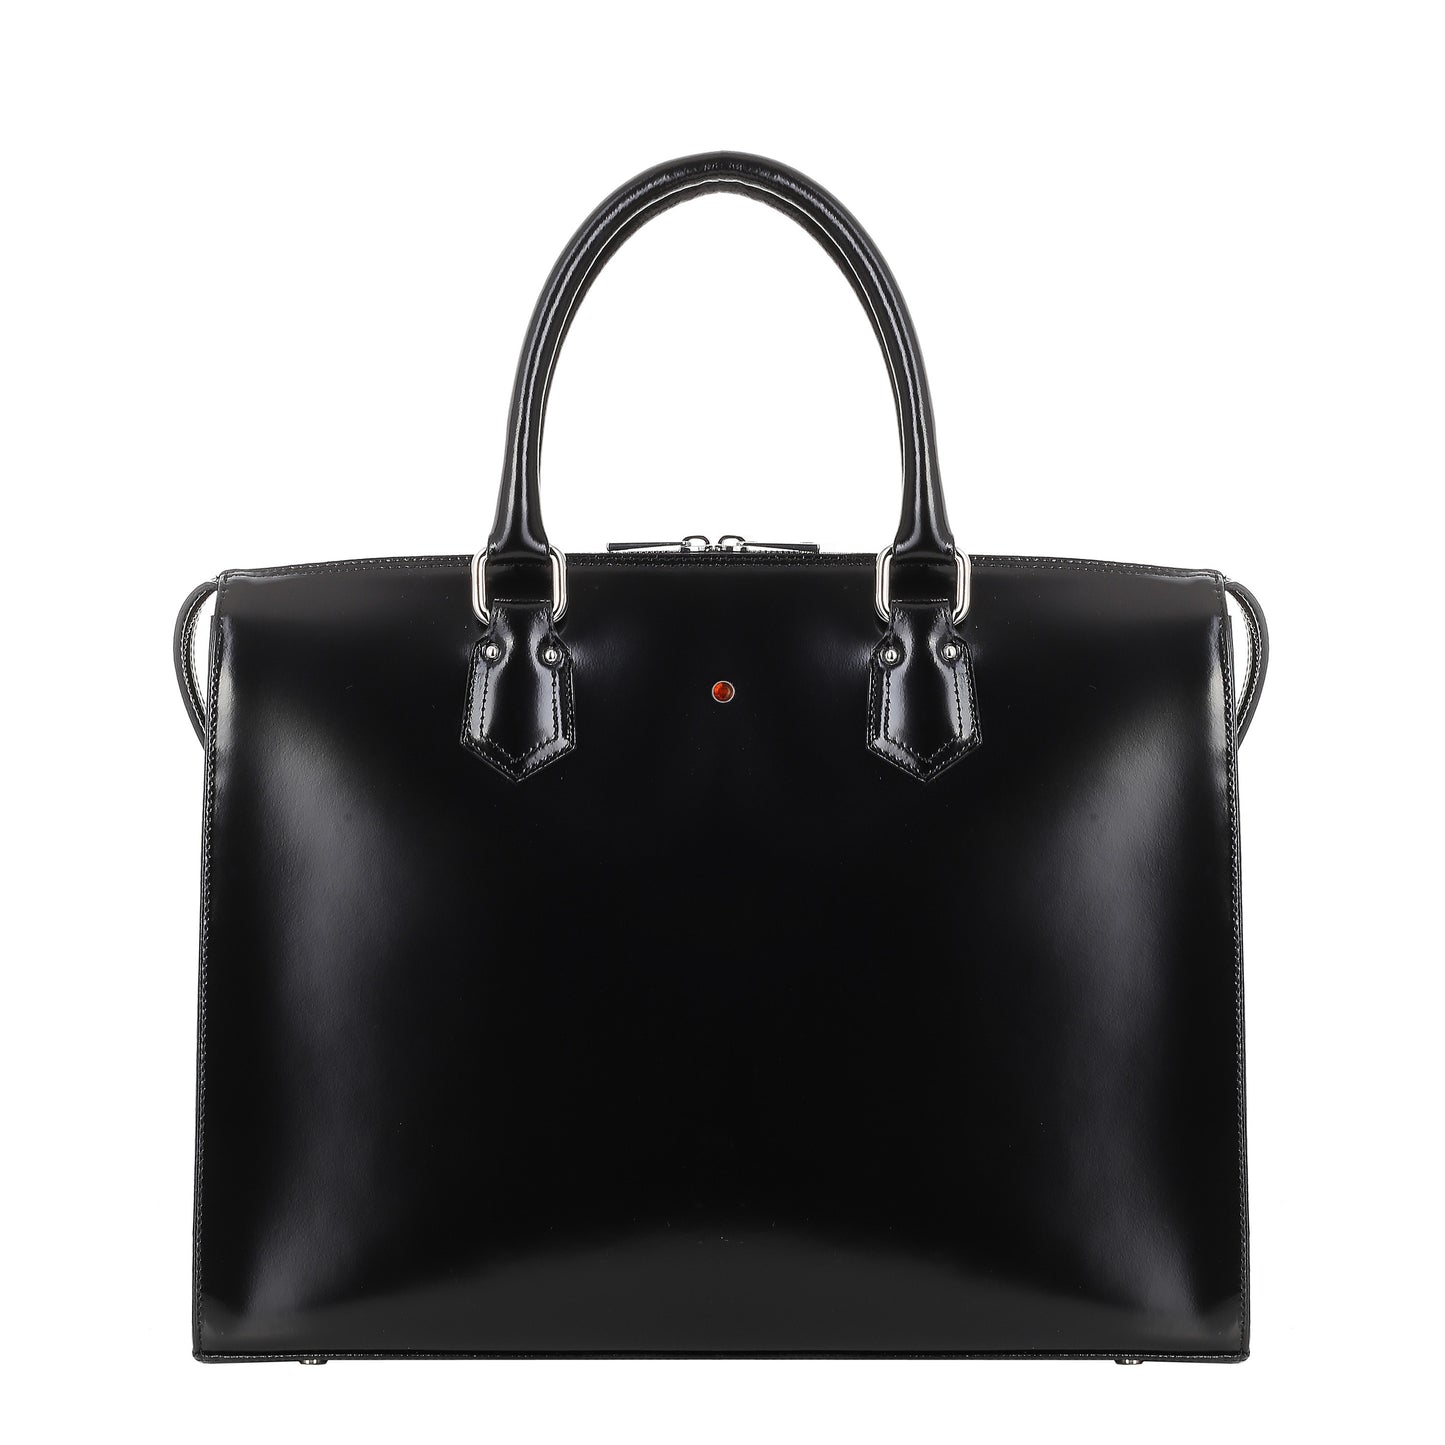 Women's leather briefcase HANA SPECCHIO BLACK